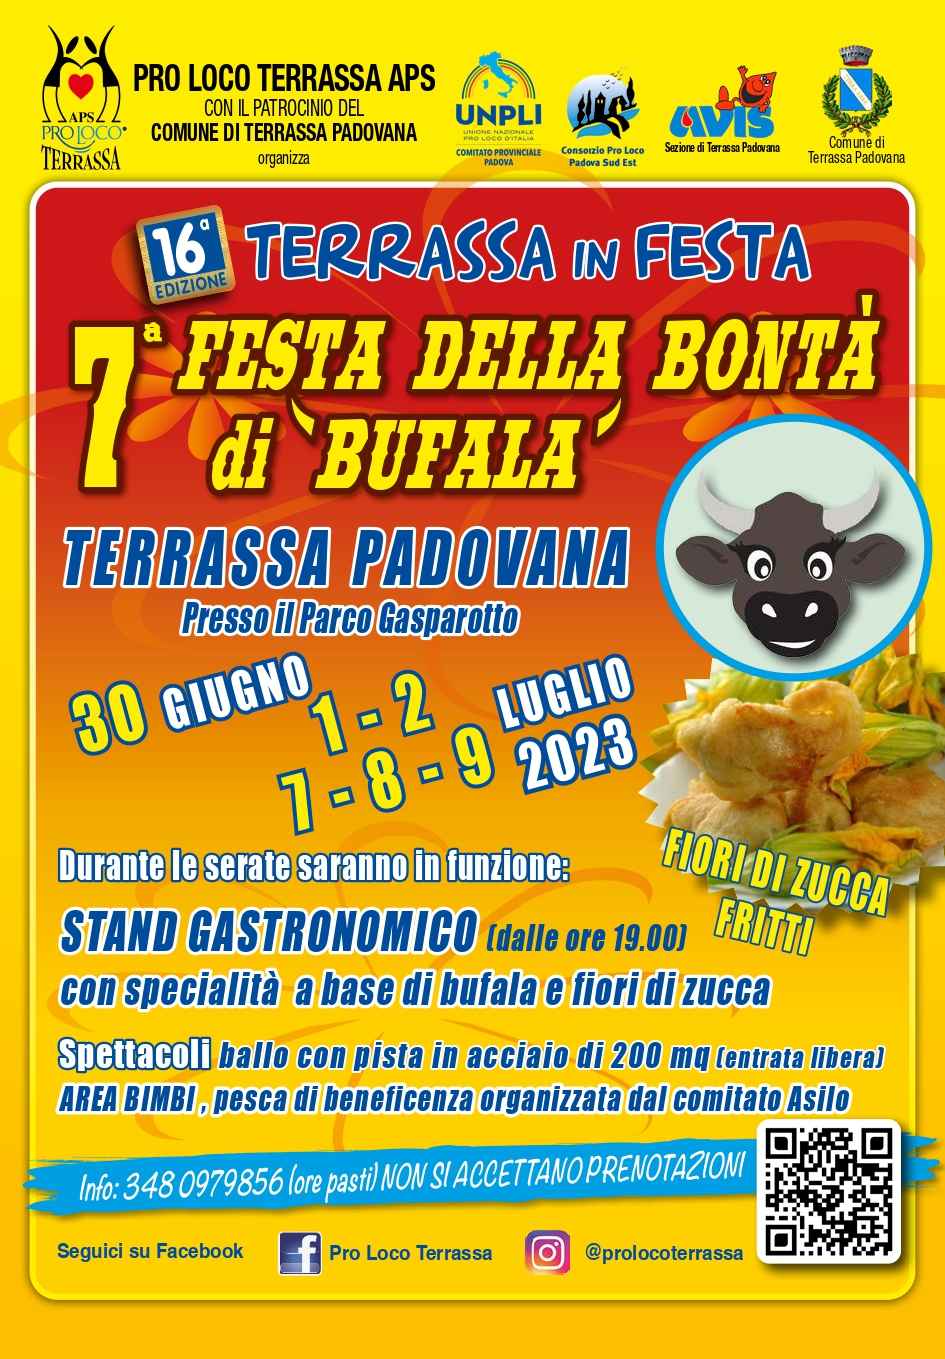 Terrassa Padovana (PD)
"6^ Festa della Bontà di Bufala"
1-2-3 • 8-9-10 Luglio 2022 